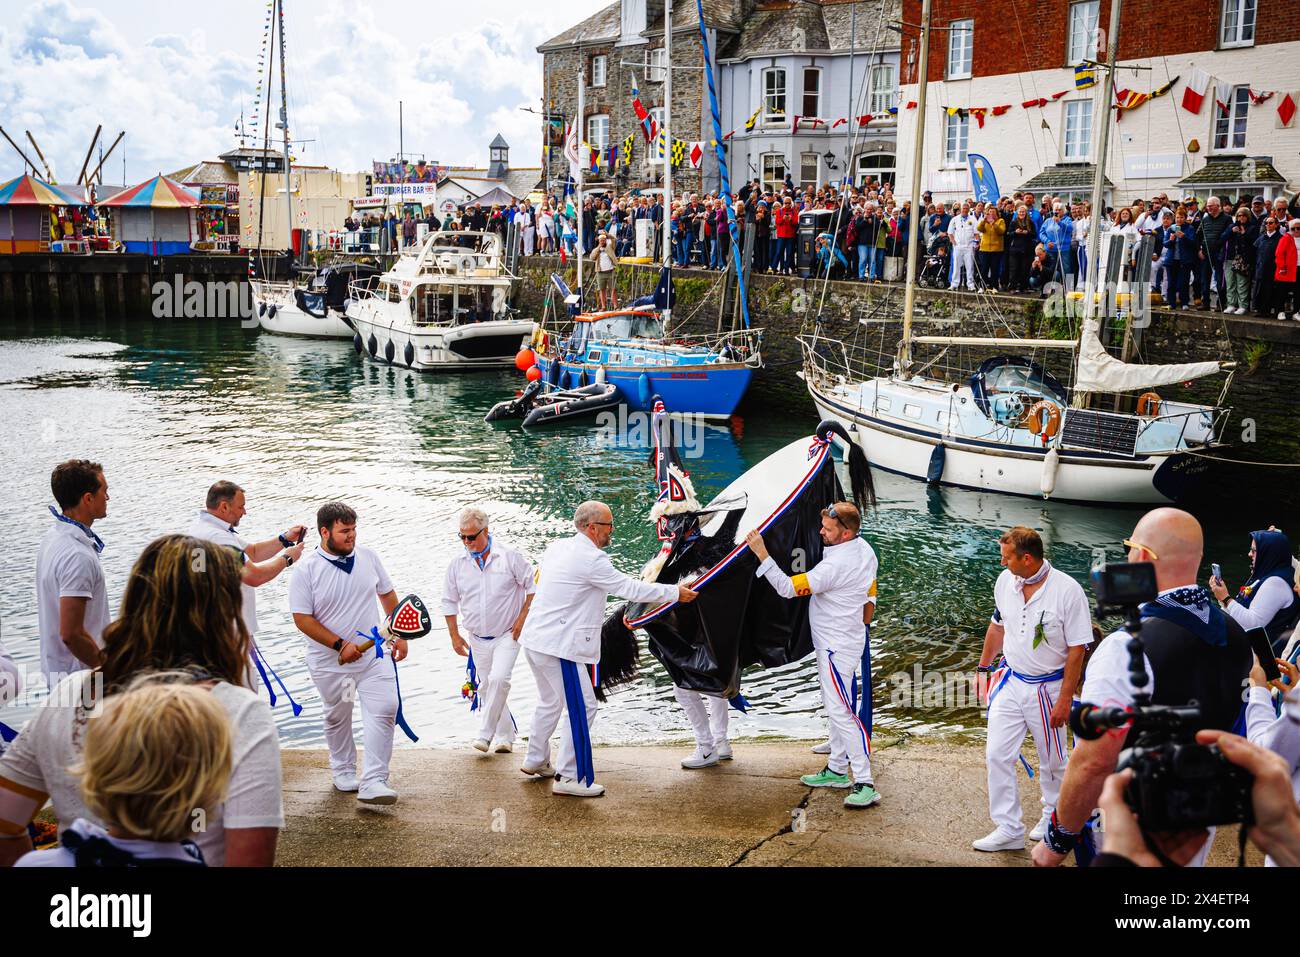 Il Blue 'Oss by the Harbour al festival 'Obby' Oss, un tradizionale evento popolare annuale del maggio a Padstow, una città costiera in Cornovaglia, Inghilterra Foto Stock